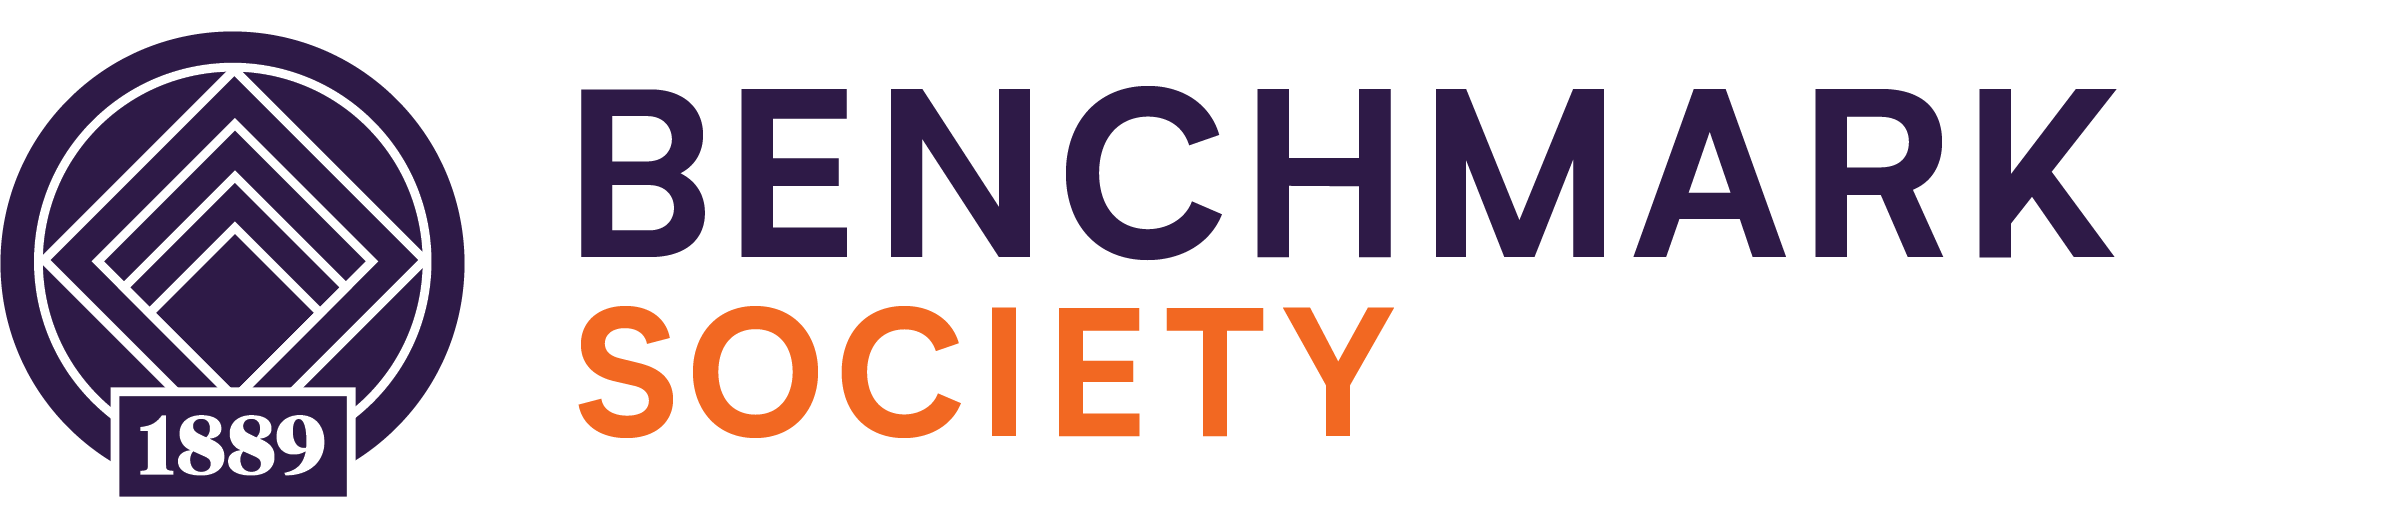 Benchmark Society Logo